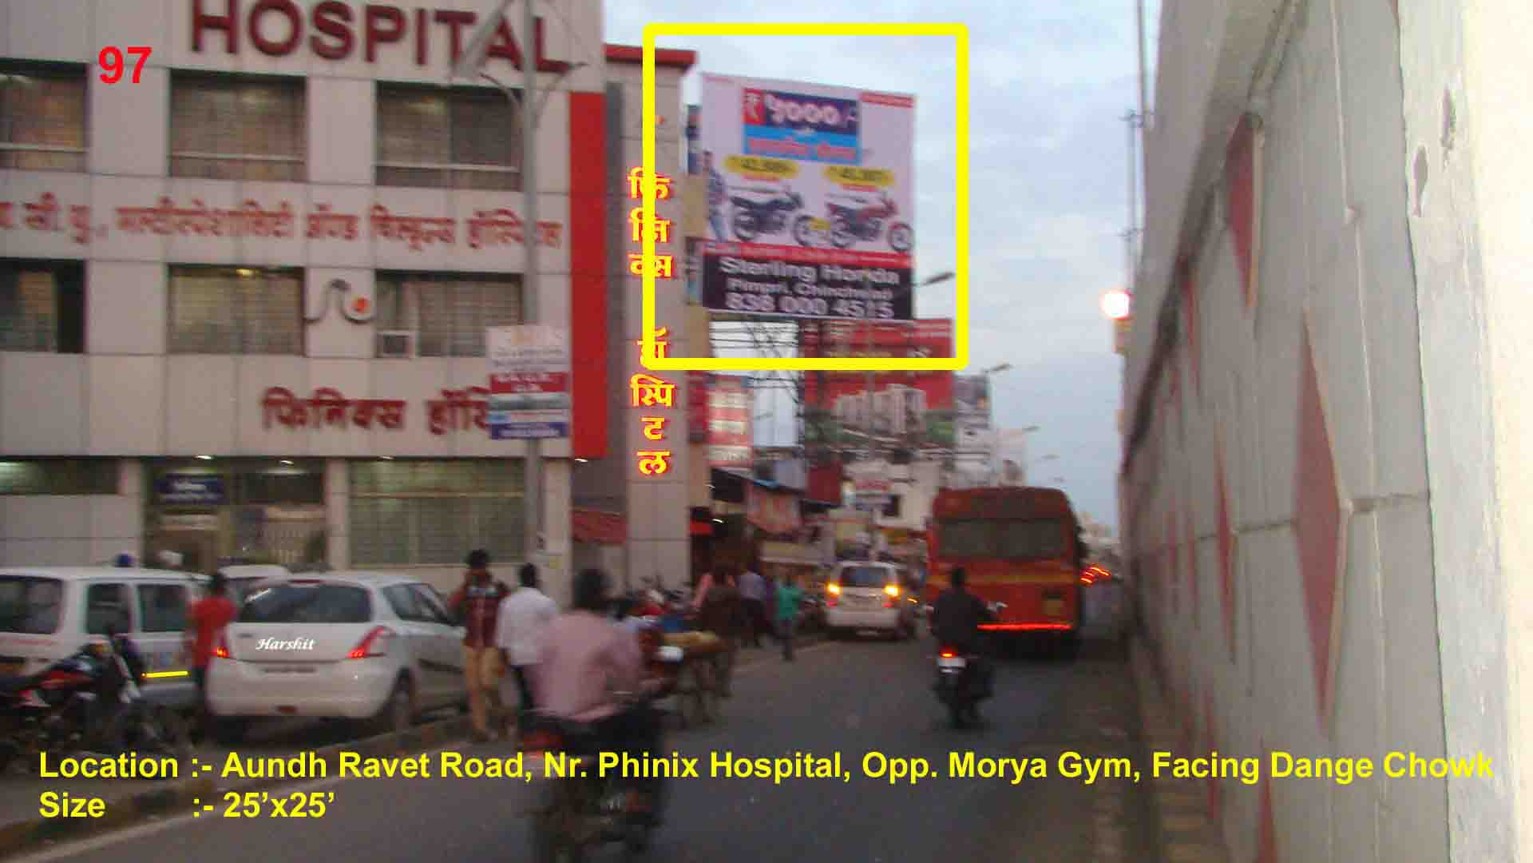 Aundh Ravet Road, Nr. Phinix Hospital, Opp. Morya Gym, Pune 